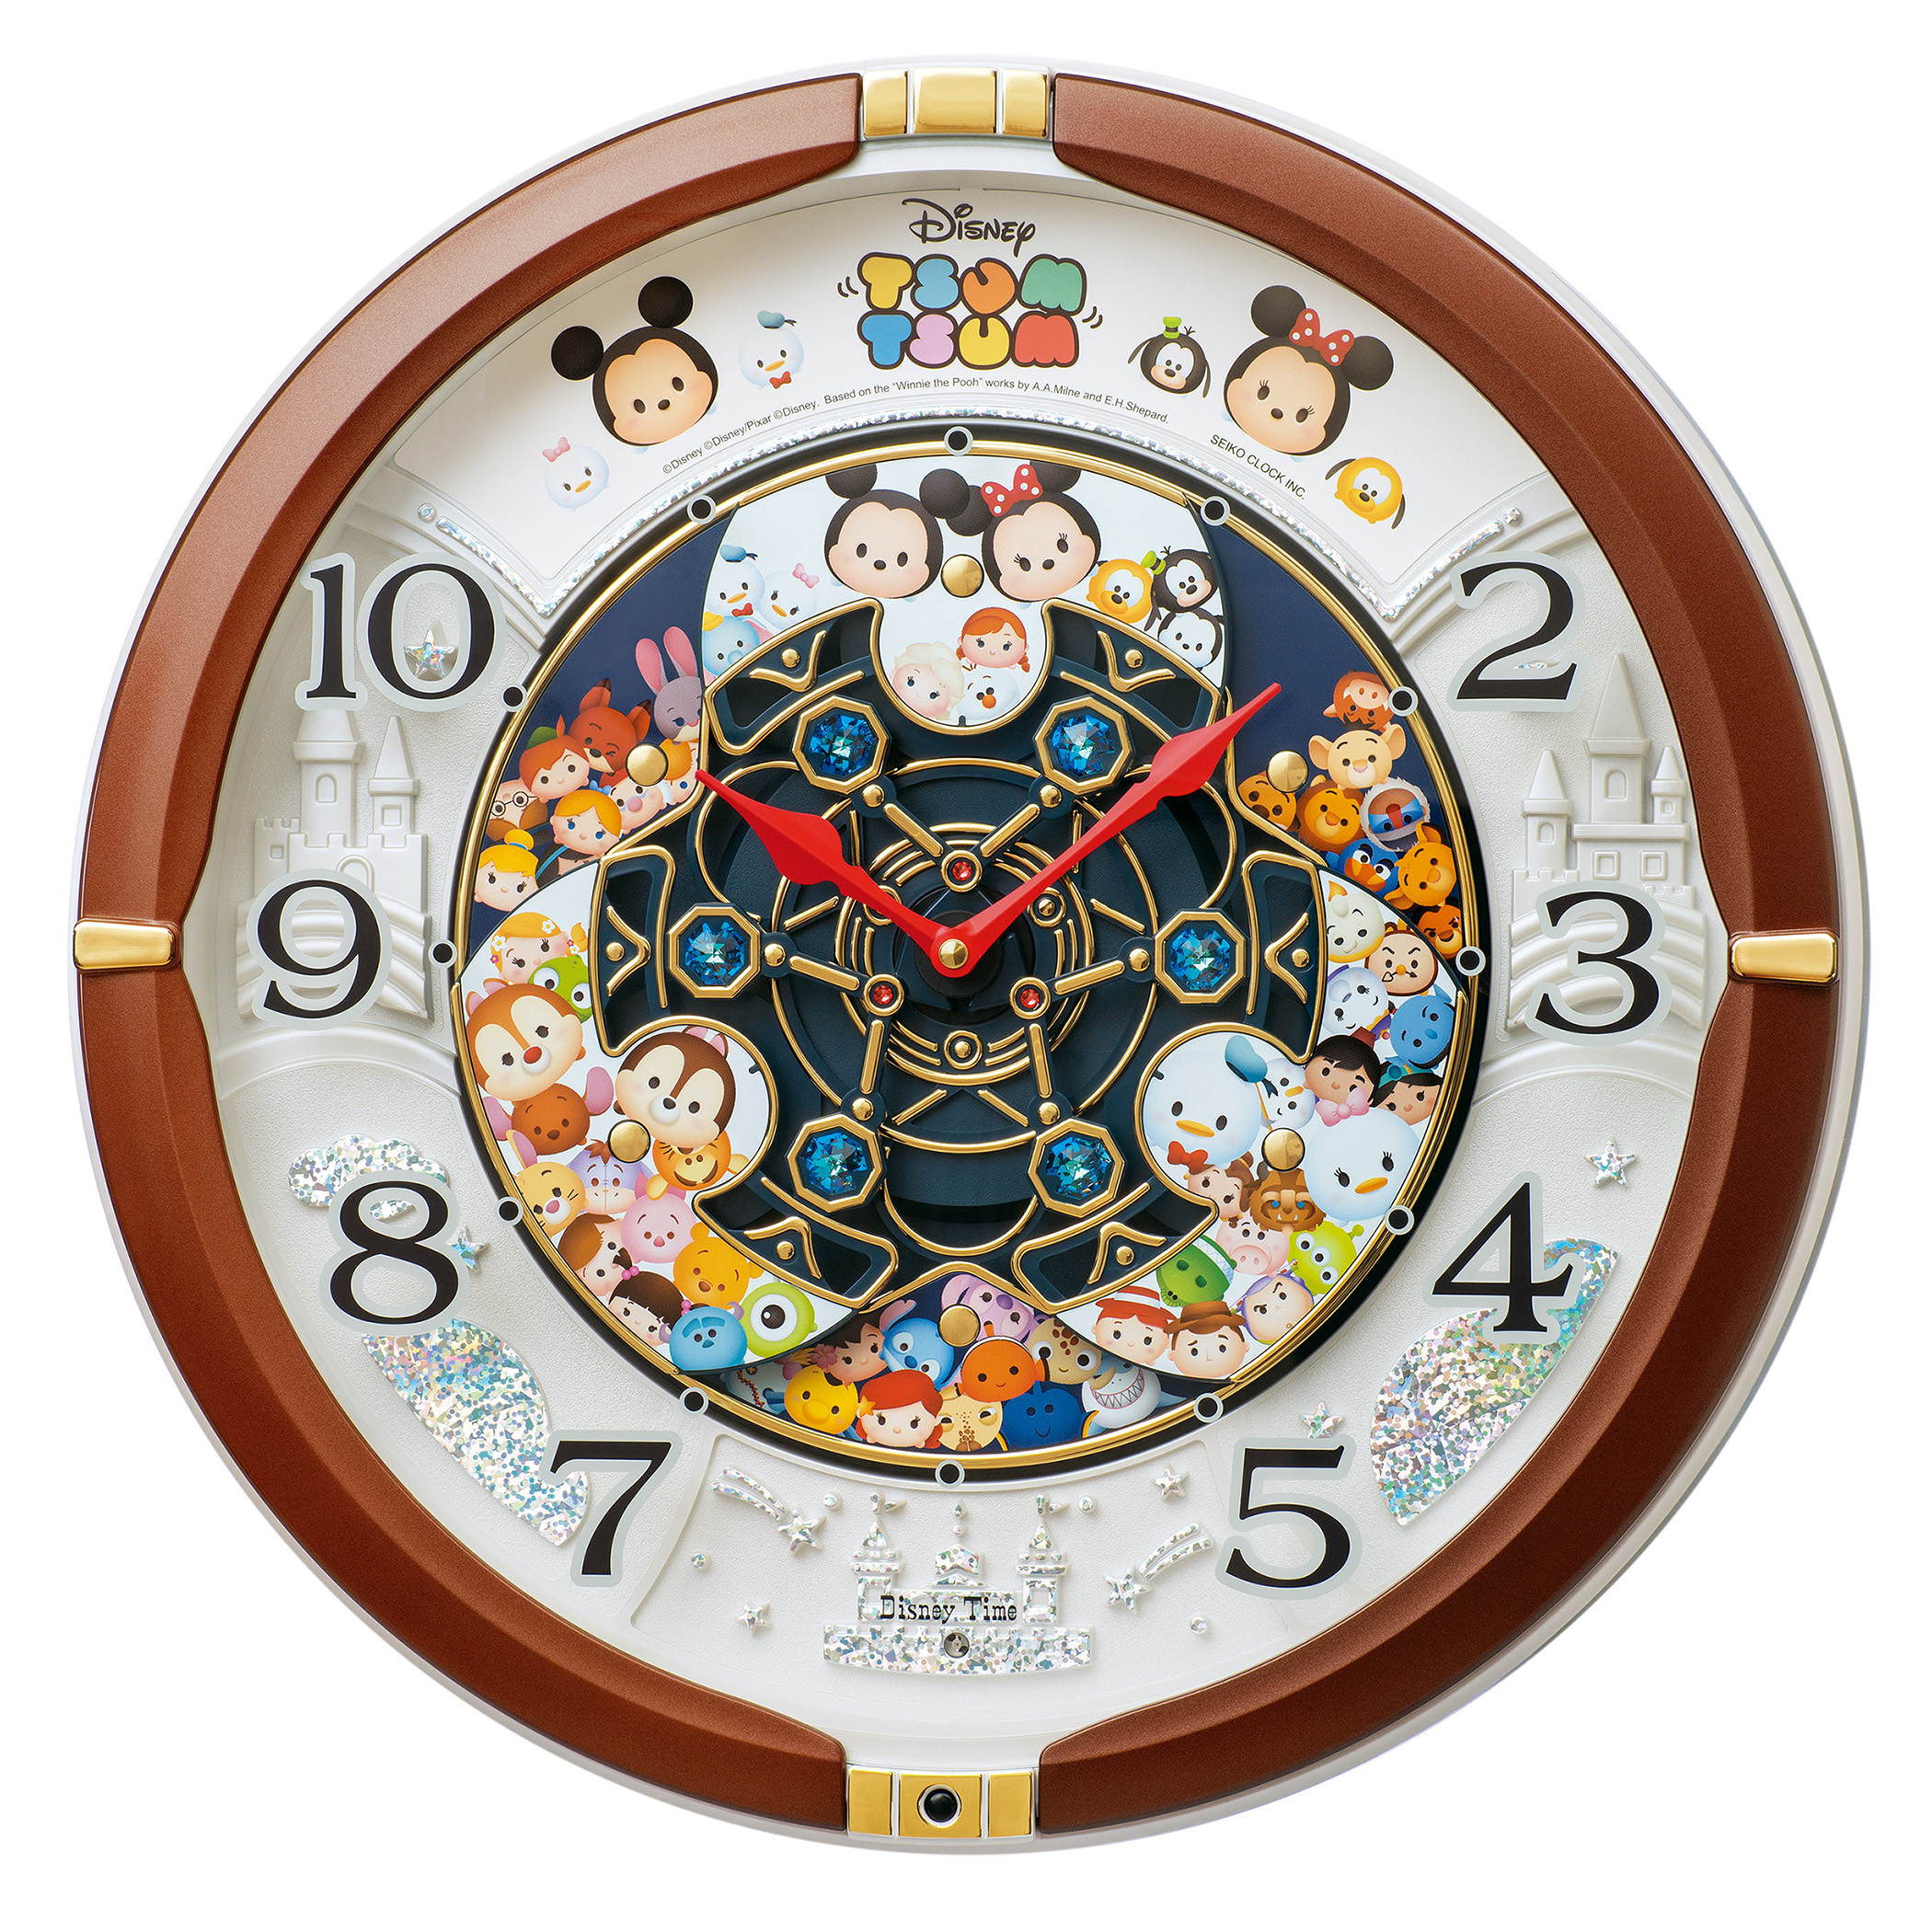 ディズニー ツムツムのからくり時計が初登場 セイコークロック株式会社のプレスリリース